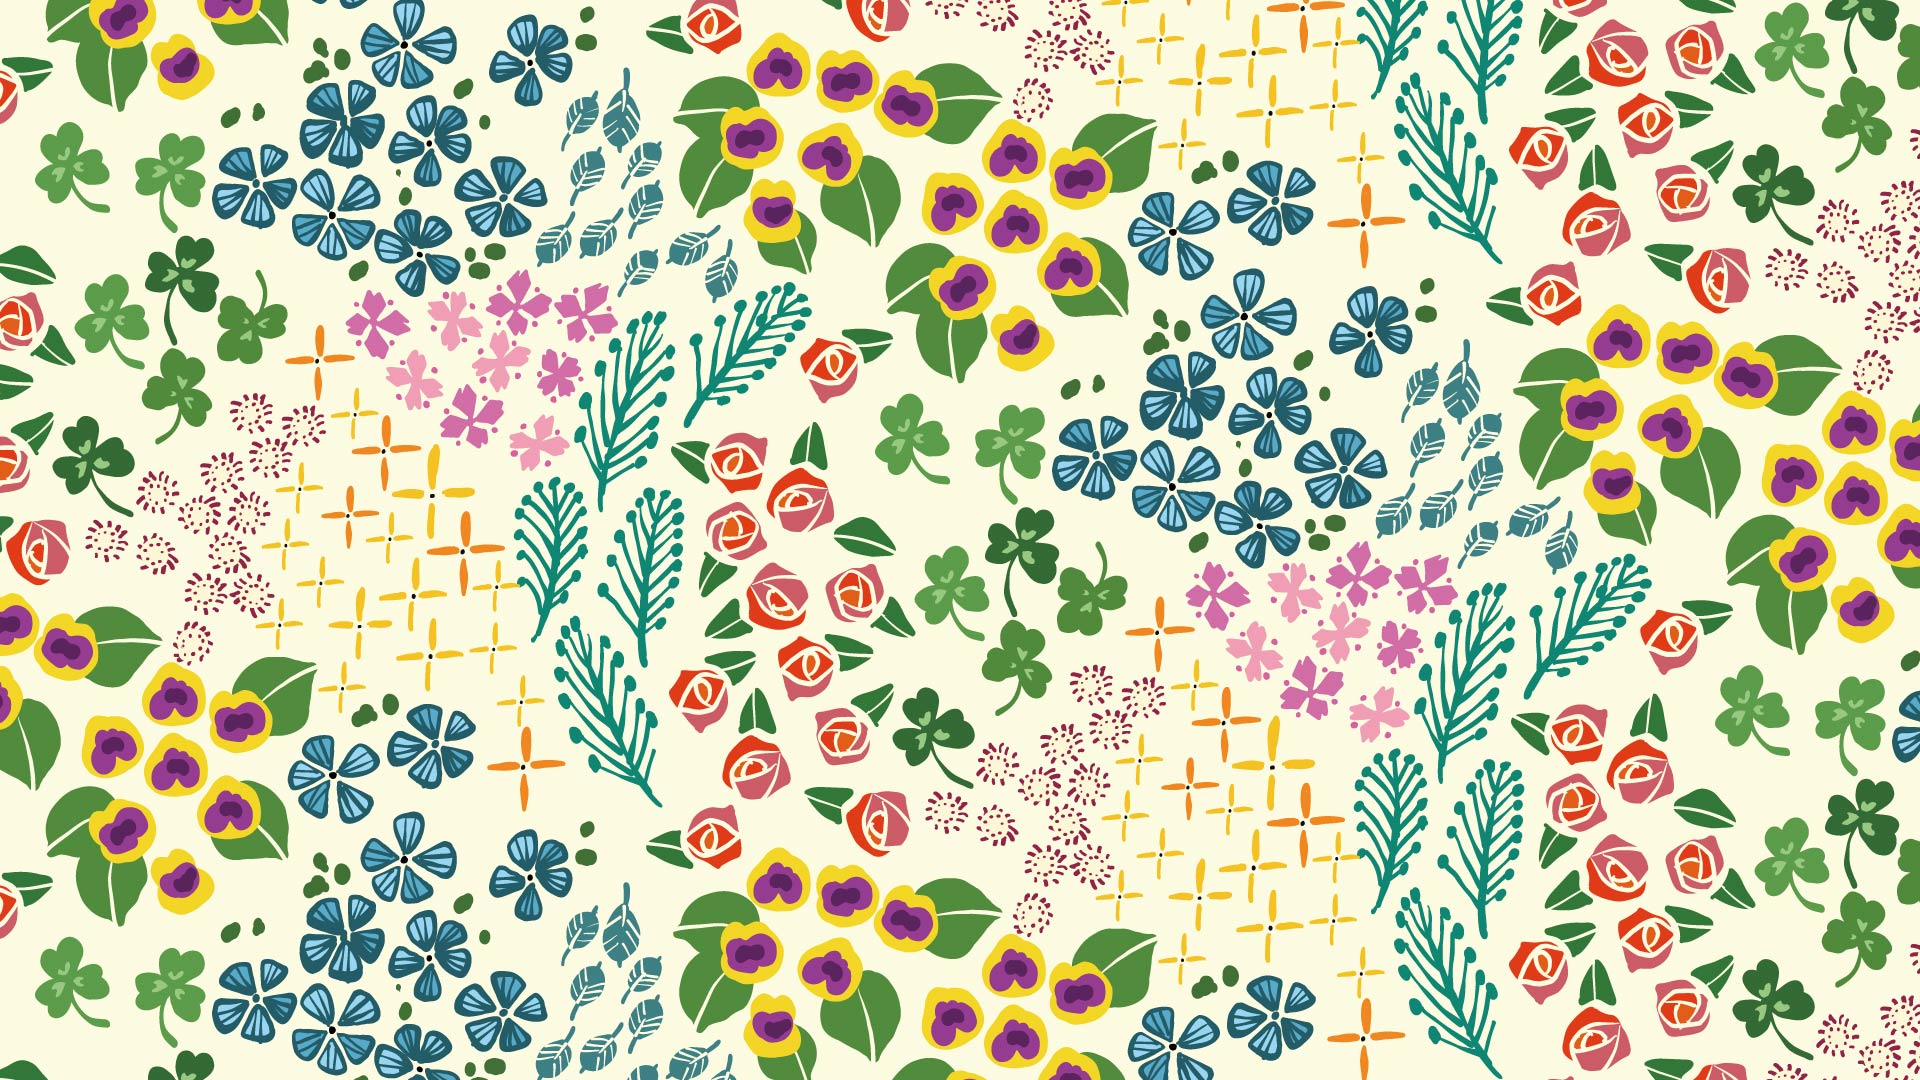 クリーム色の背景に色々な花のパターン